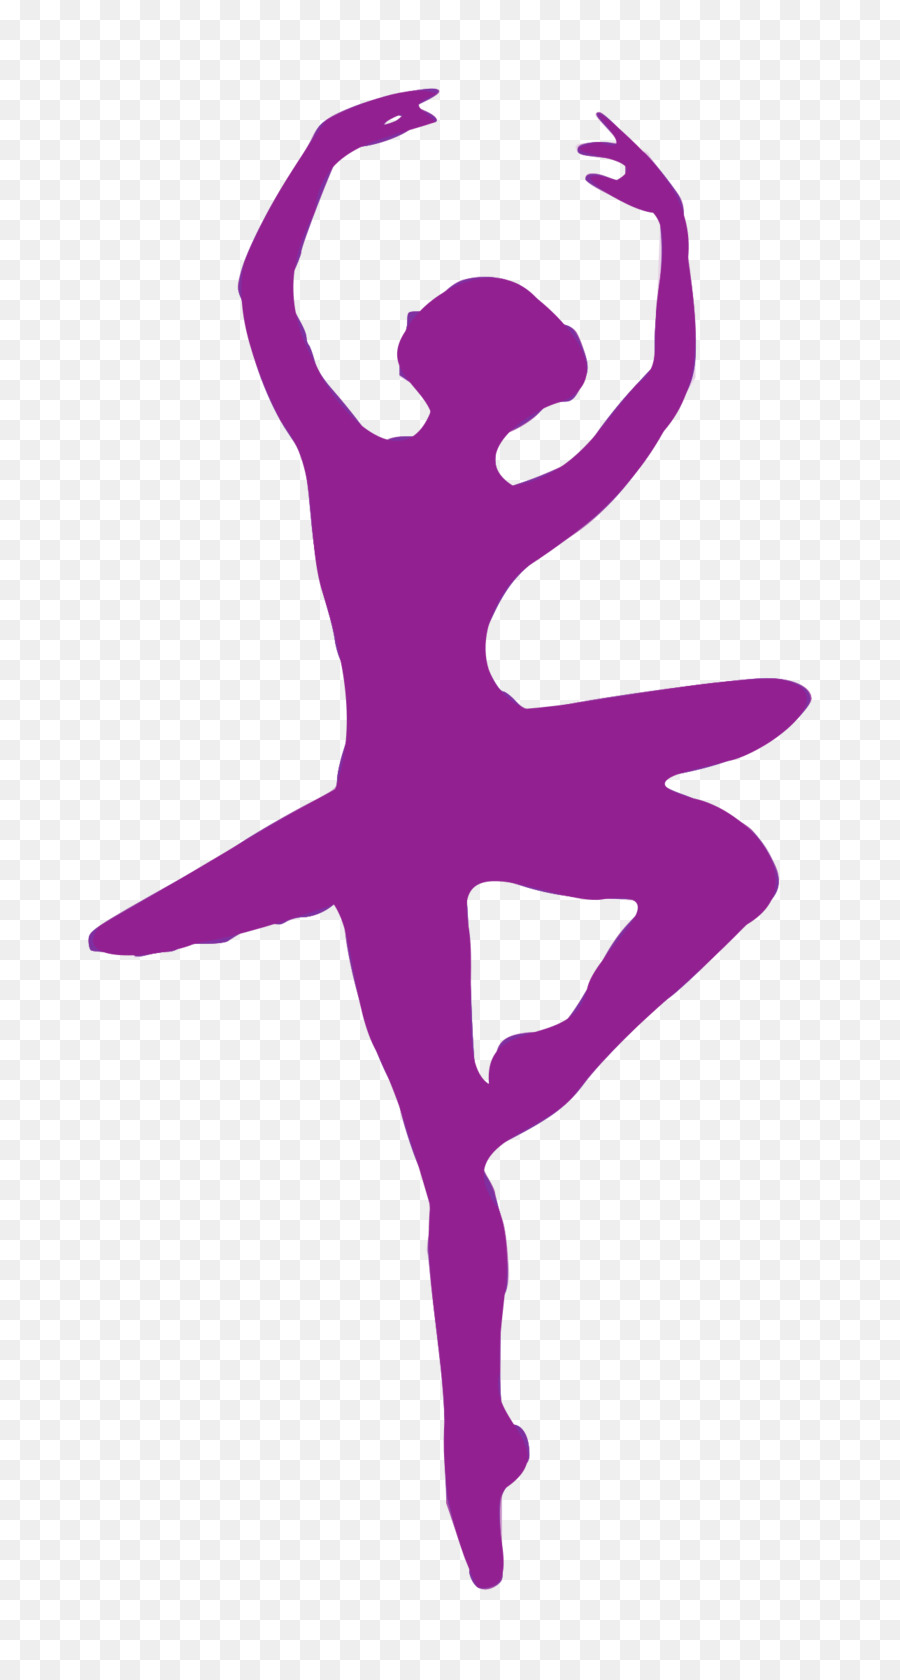 Ballet Dancer Silhouette Clip art - ballet png download - 1287*2400 - Free Transparent  png Download.